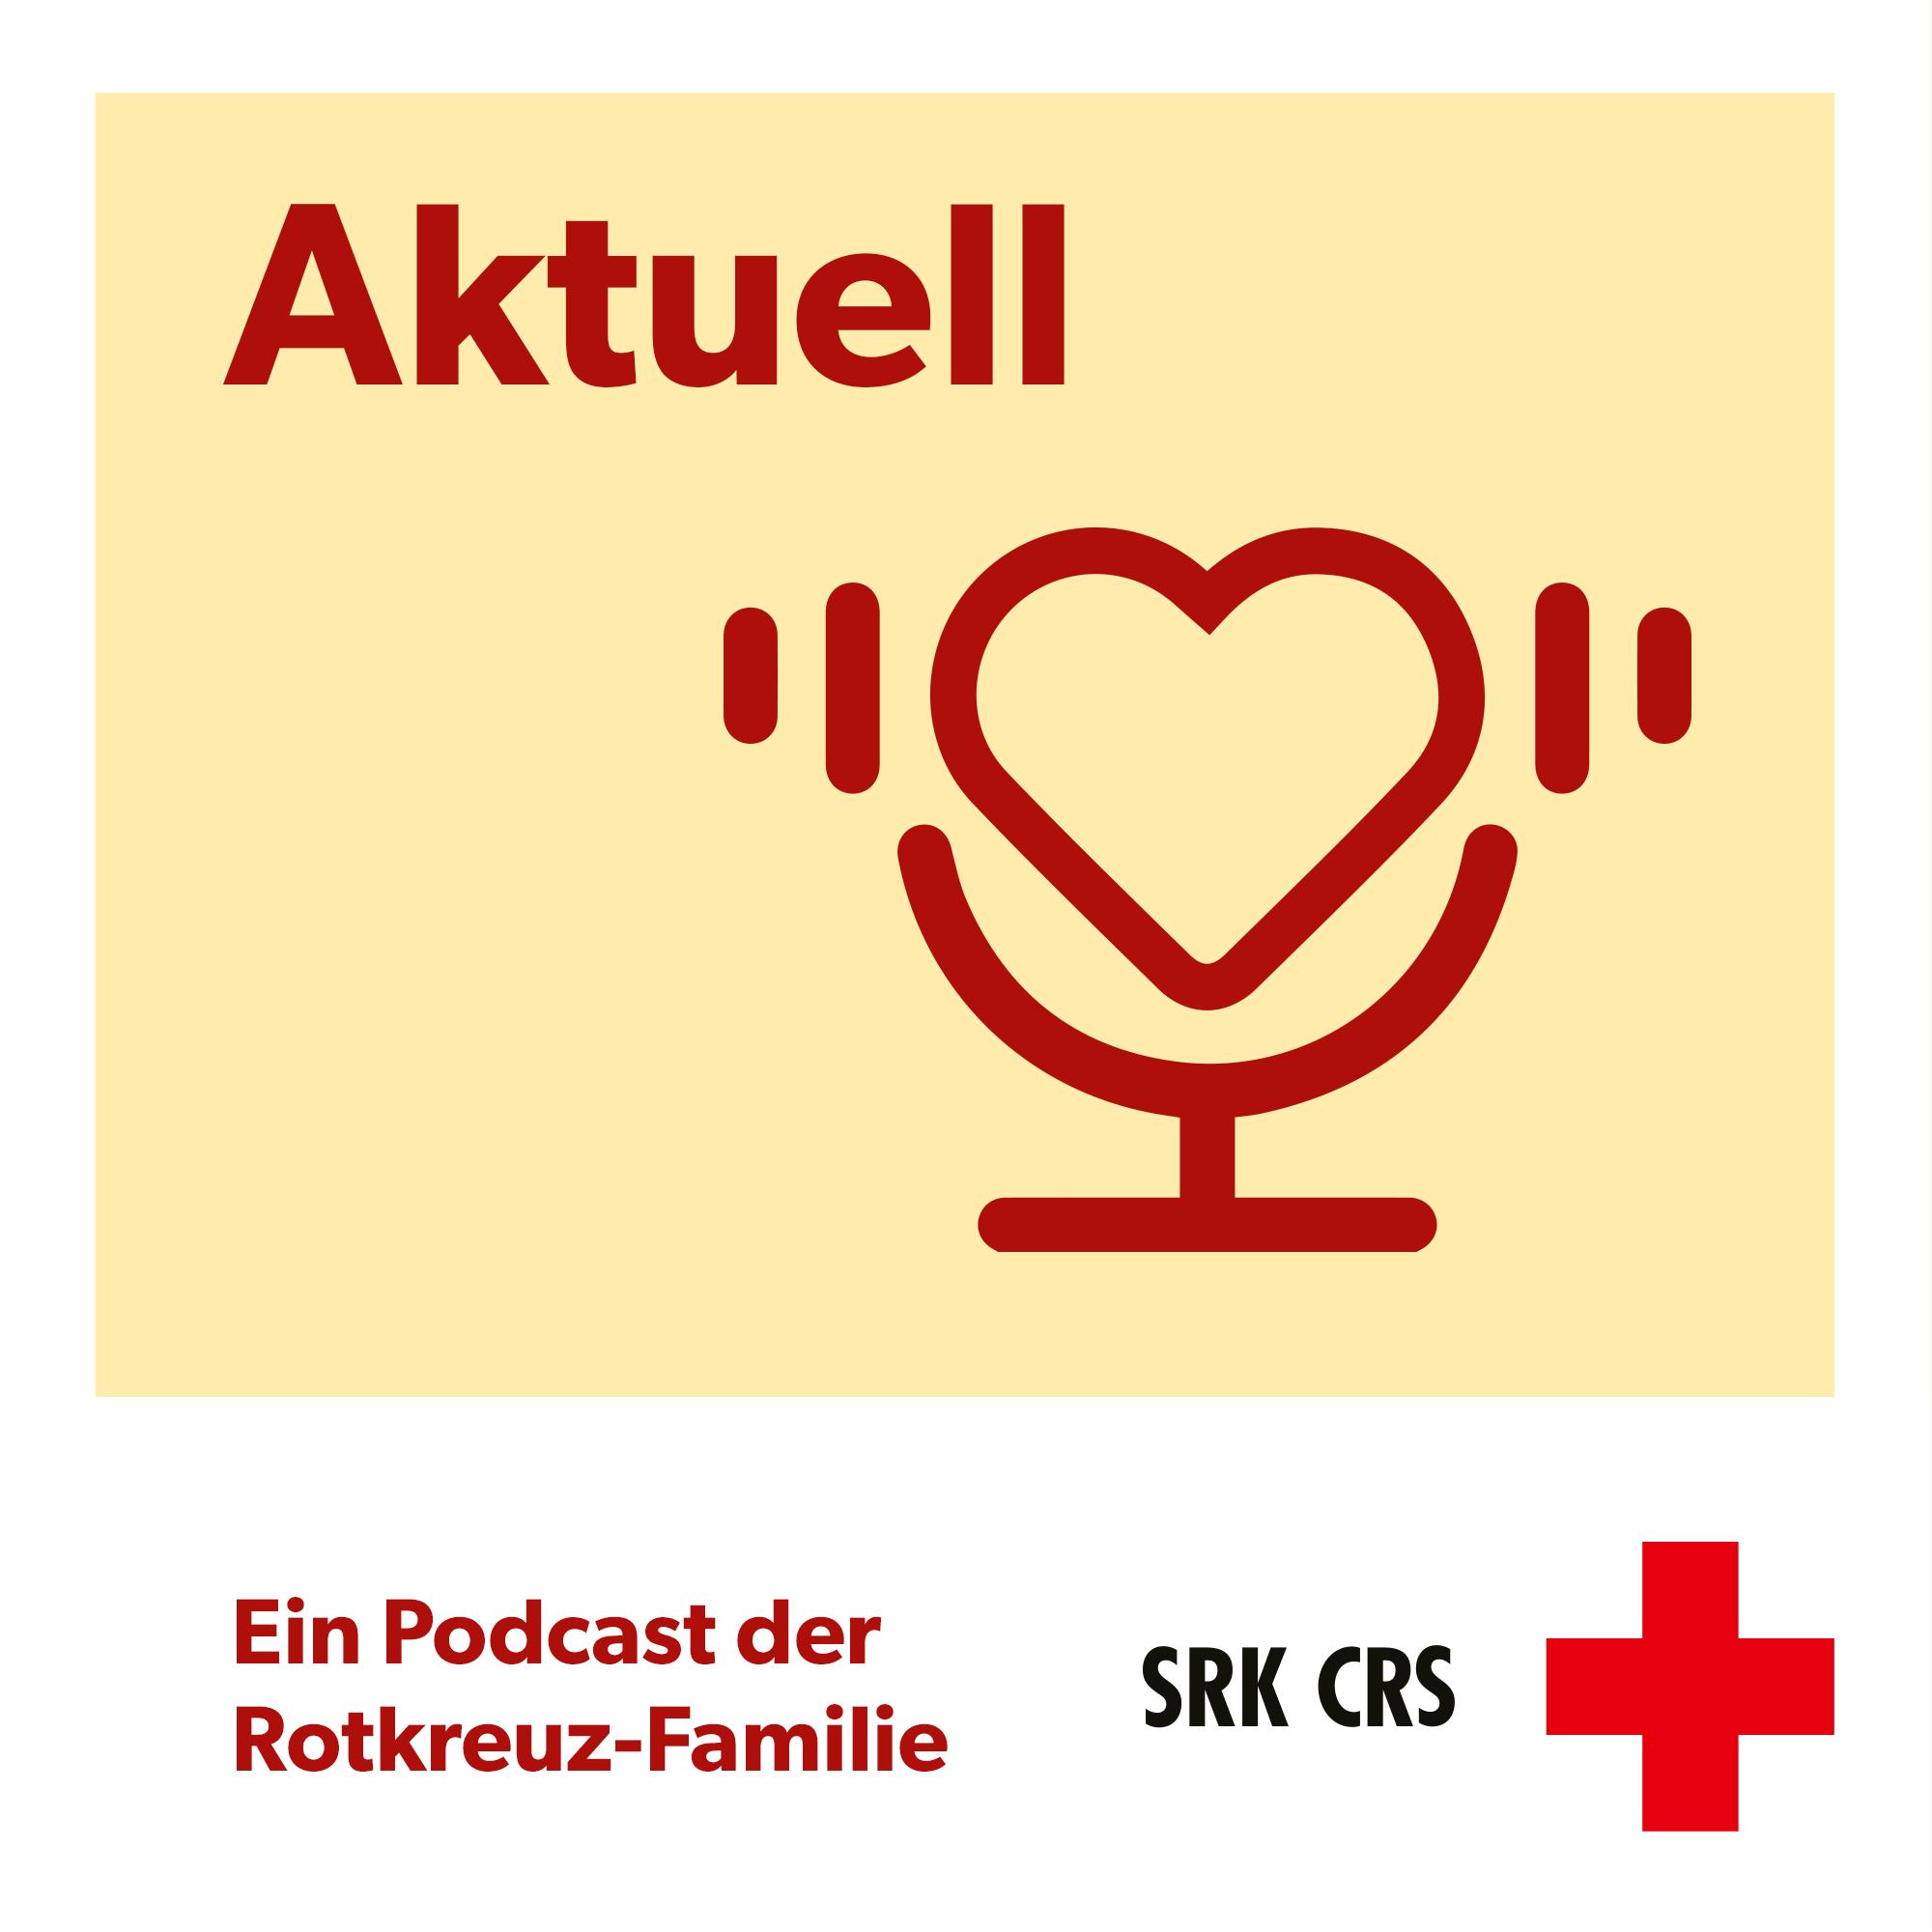 Logo de la série de podcasts CRS «aktuell»: un micro en forme de cœur sur un fond jaune pastel